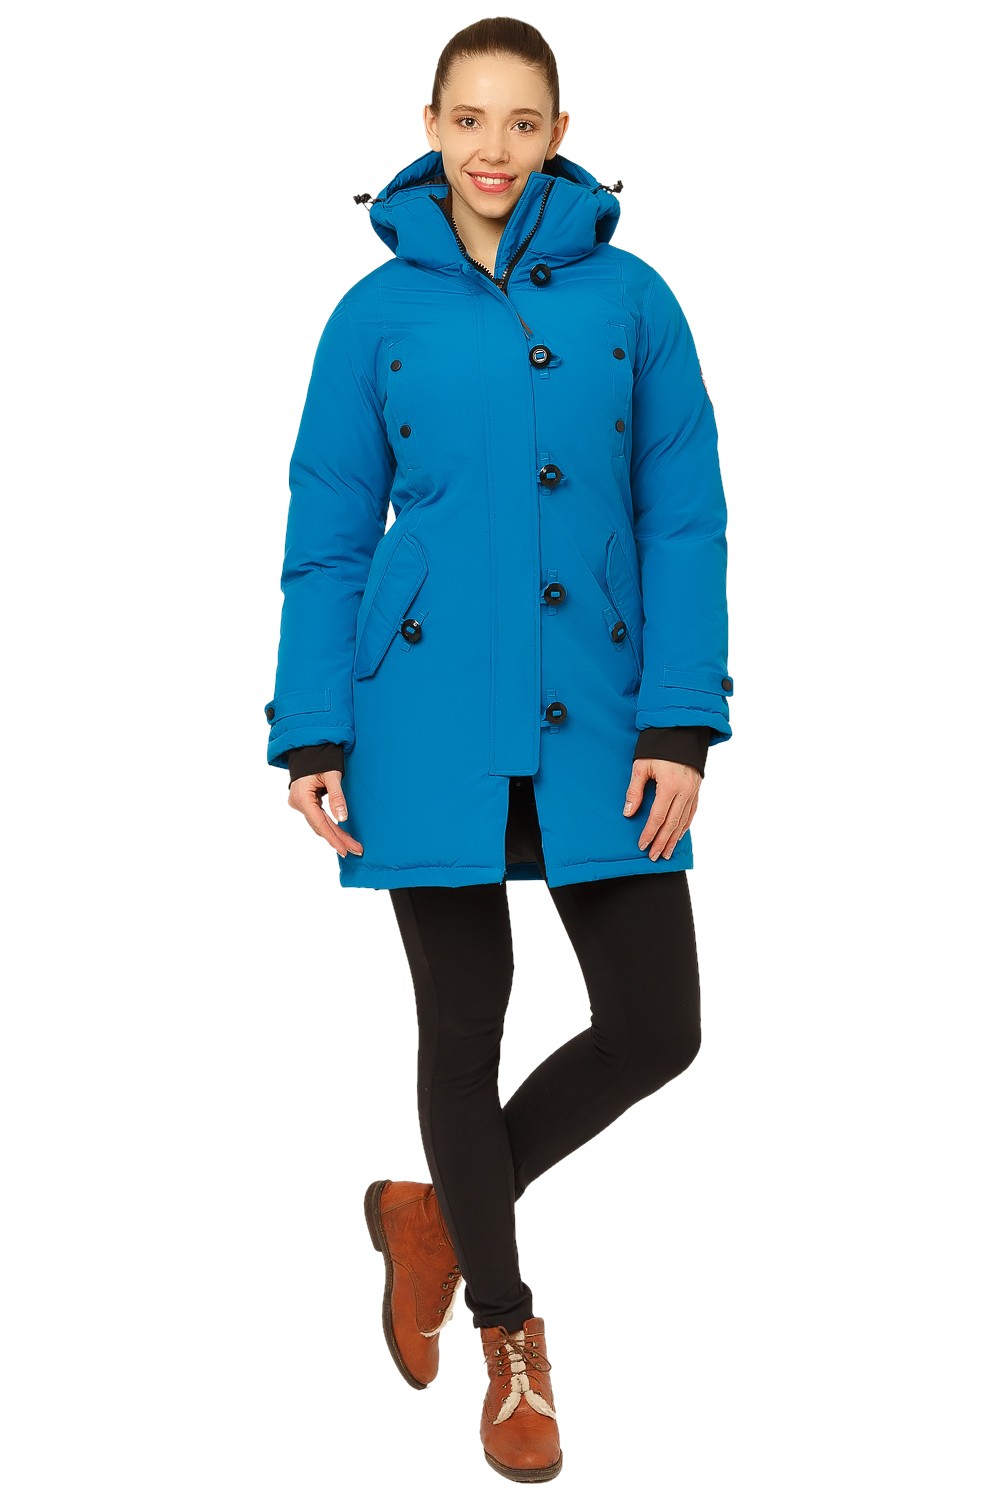 Купить оптом Куртка парка зимняя женская синего цвета 1802S в Екатеринбурге